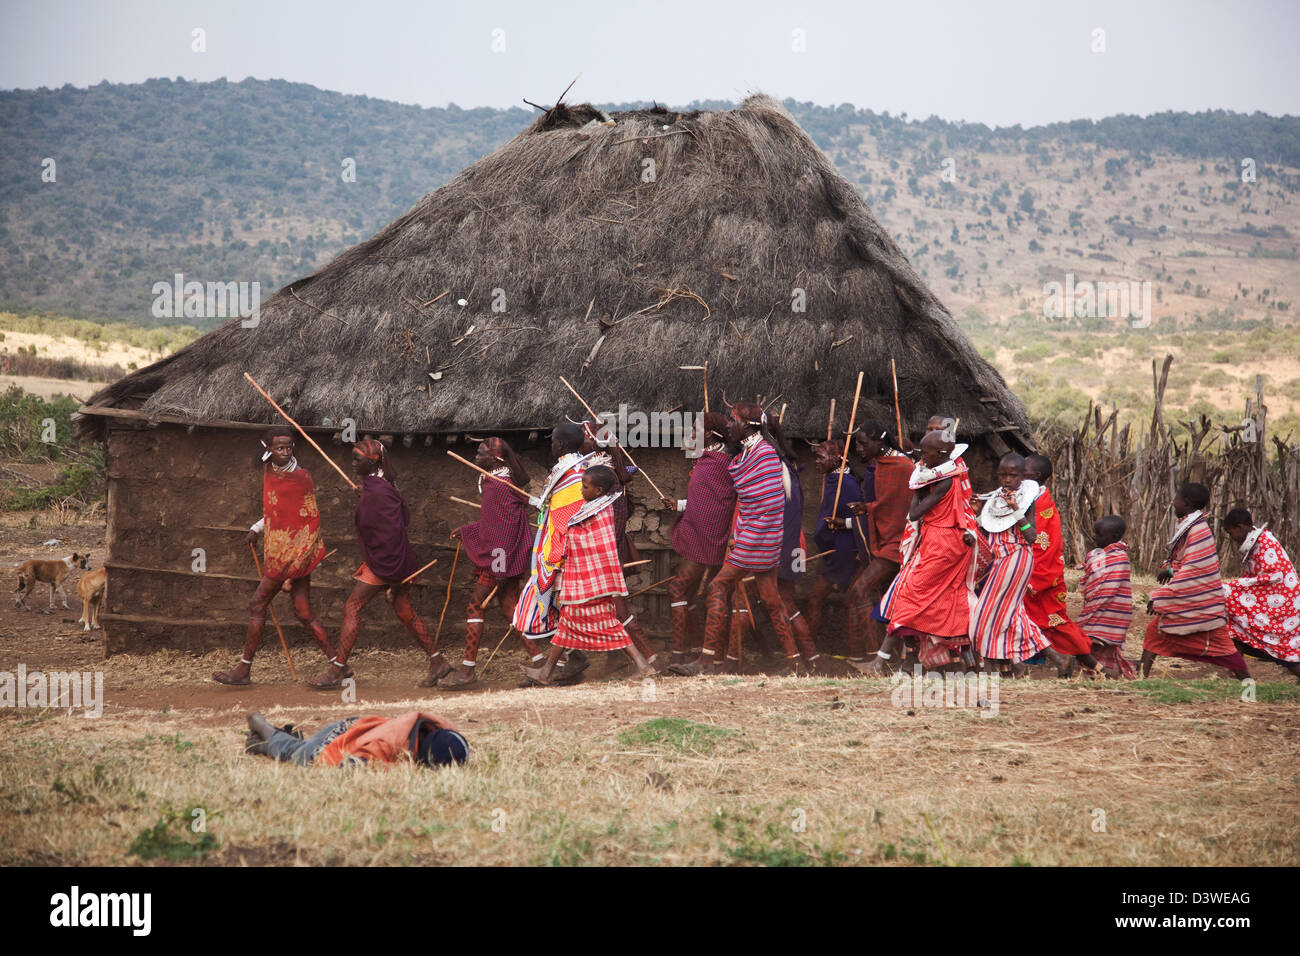 Un masaï partie de mariage est en cours avec les jeunes hommes et les jeunes filles danser autour du village. Un ivrogne s'est effondré dans l'herbe. Banque D'Images